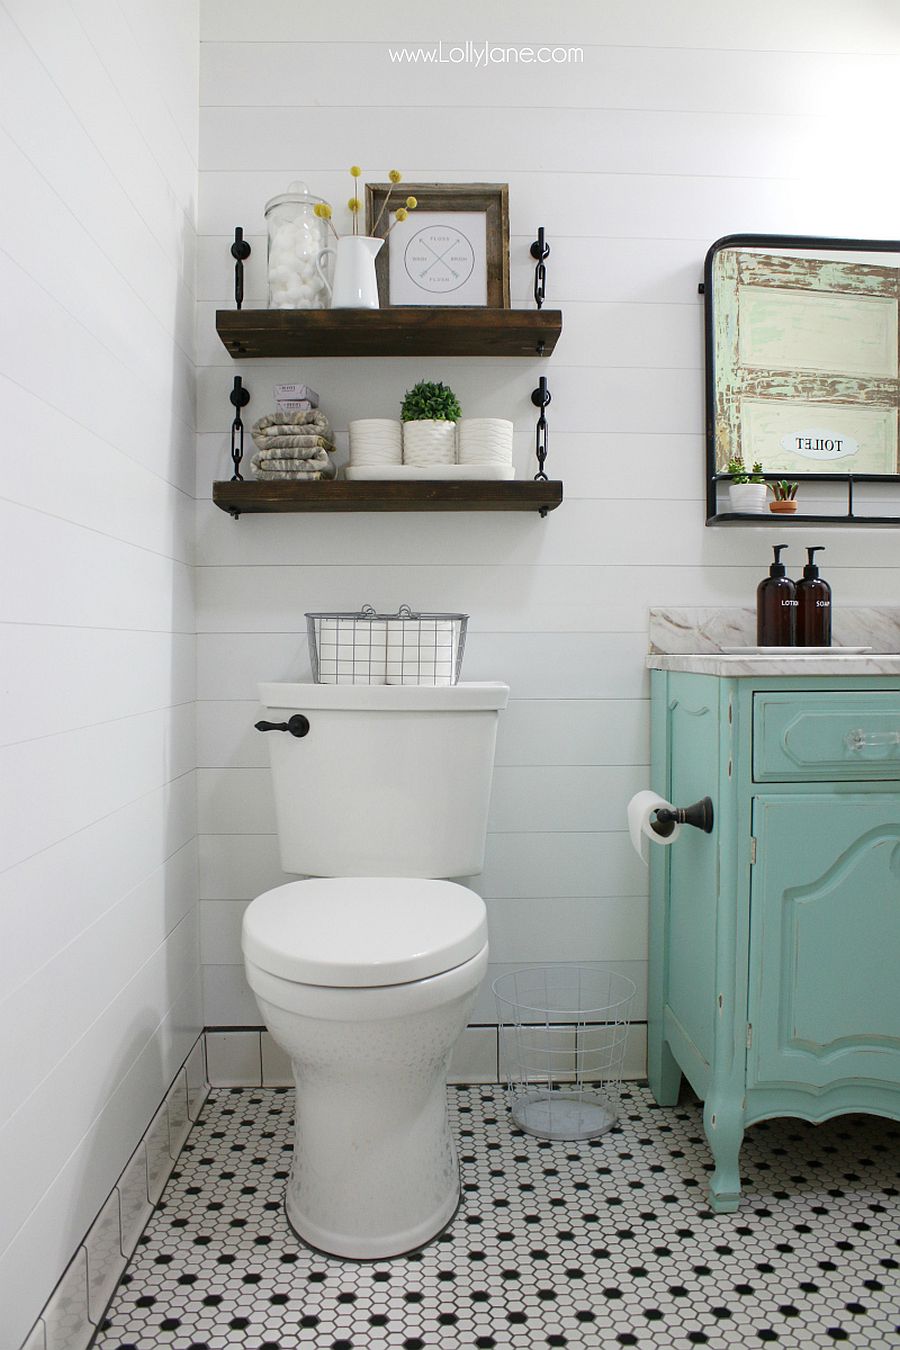 DIY turnbuckle shelves look as good in the modern bathroom as they do in farmhouse space